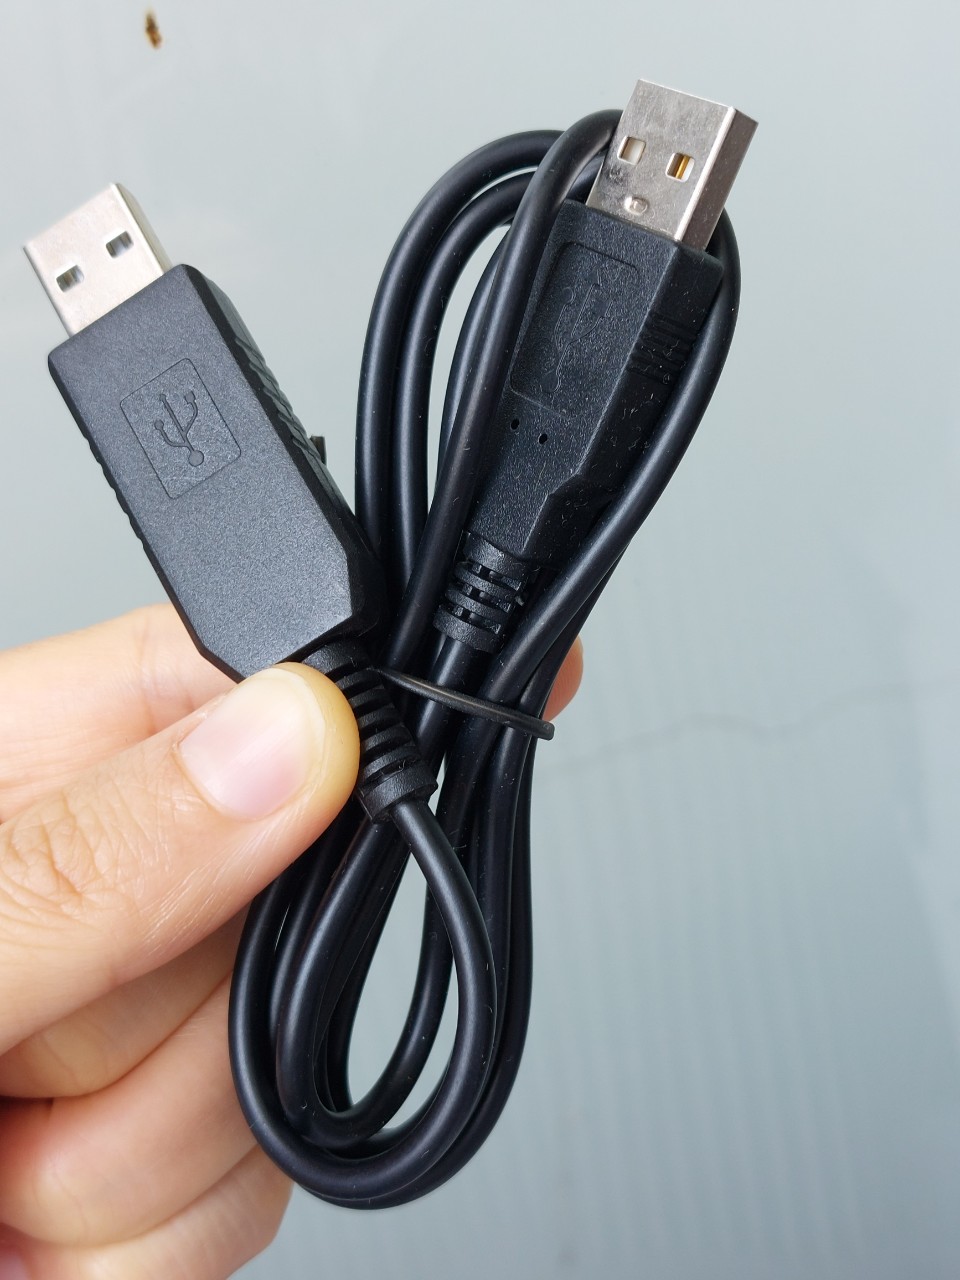 Dây cáp chỉnh vang số RS232 2 đầu USB độc quyền từ nhà sản xuất vang số.  Cáp phù hợp với vang số X3, X5, X6, X8,X10, X12, Vang số BFaudio 306D+ hoặc các dòng vang cố xử dụng cổng kết nối USB RS232 - usb RS232 chỉnh vang số